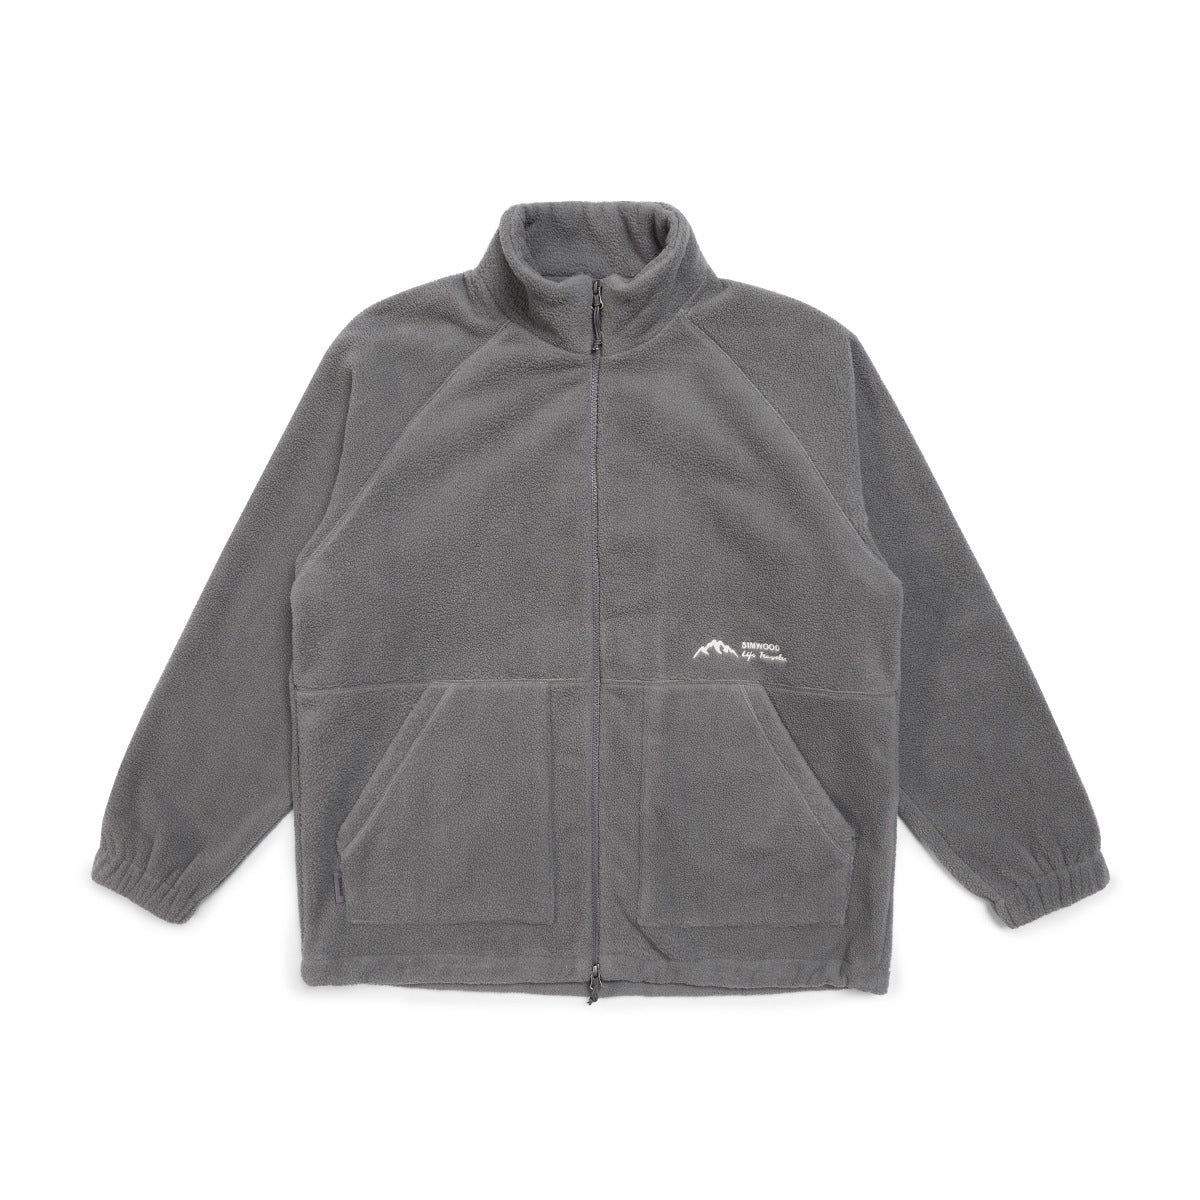 The Simwood Fleece Jacket